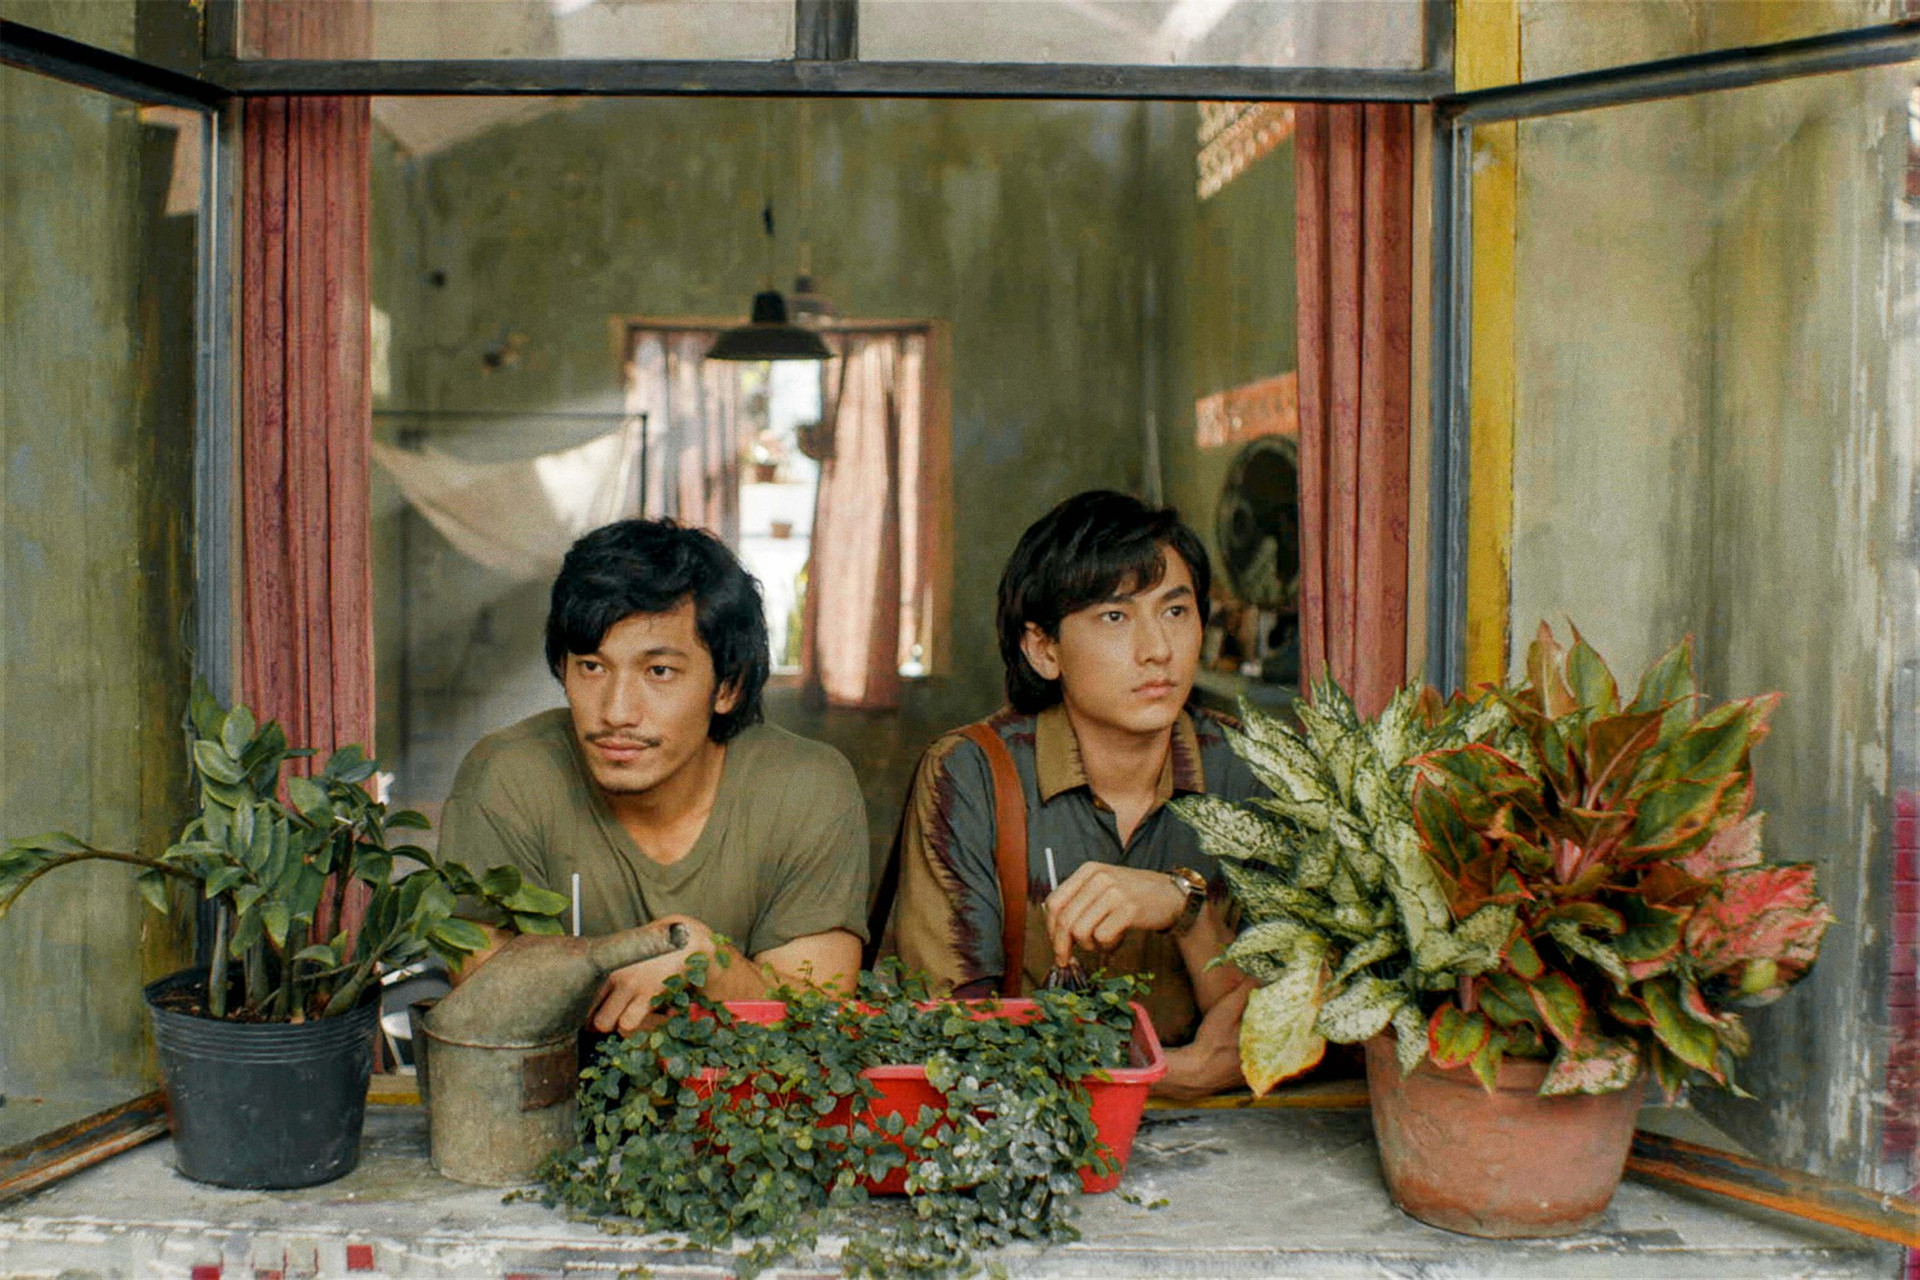 Song lang là phim điện ảnh Việt Nam đoạt nhiều giải thưởng quốc tế nhất từ trước tới nay.